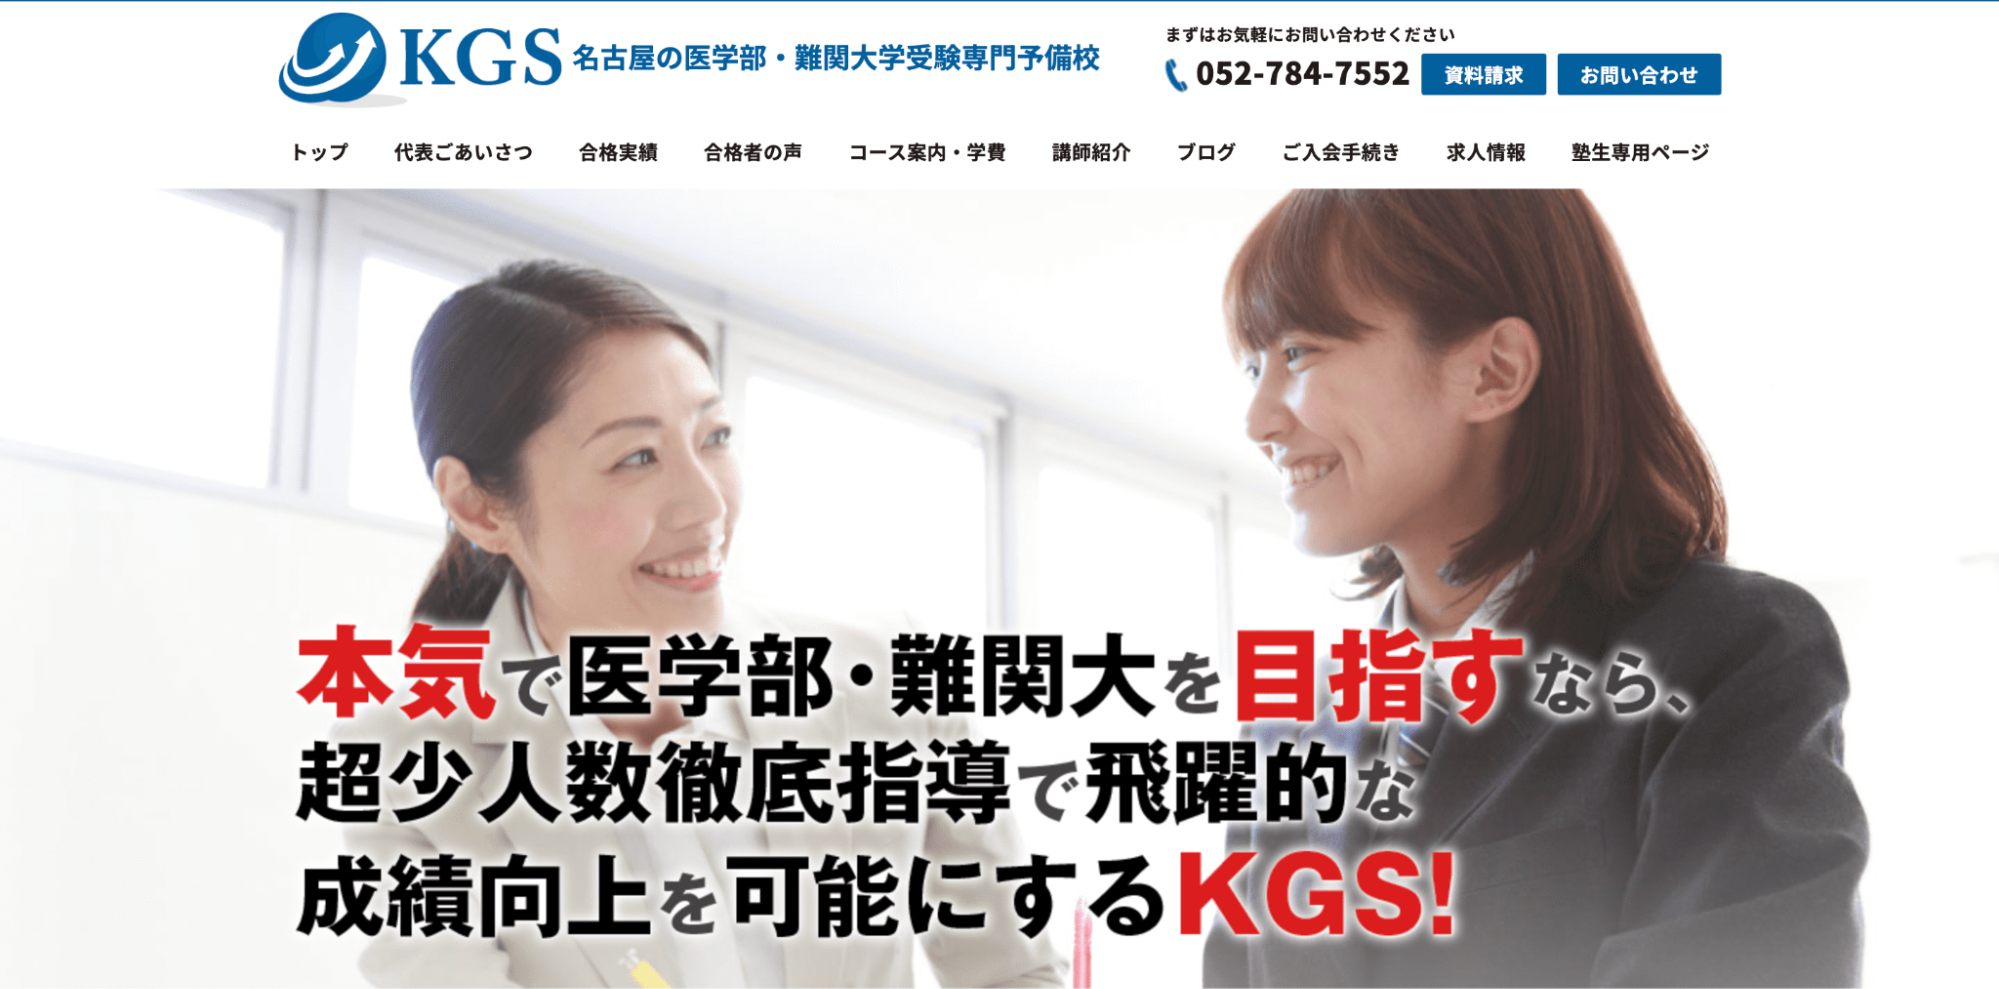 KGS公式サイト画像